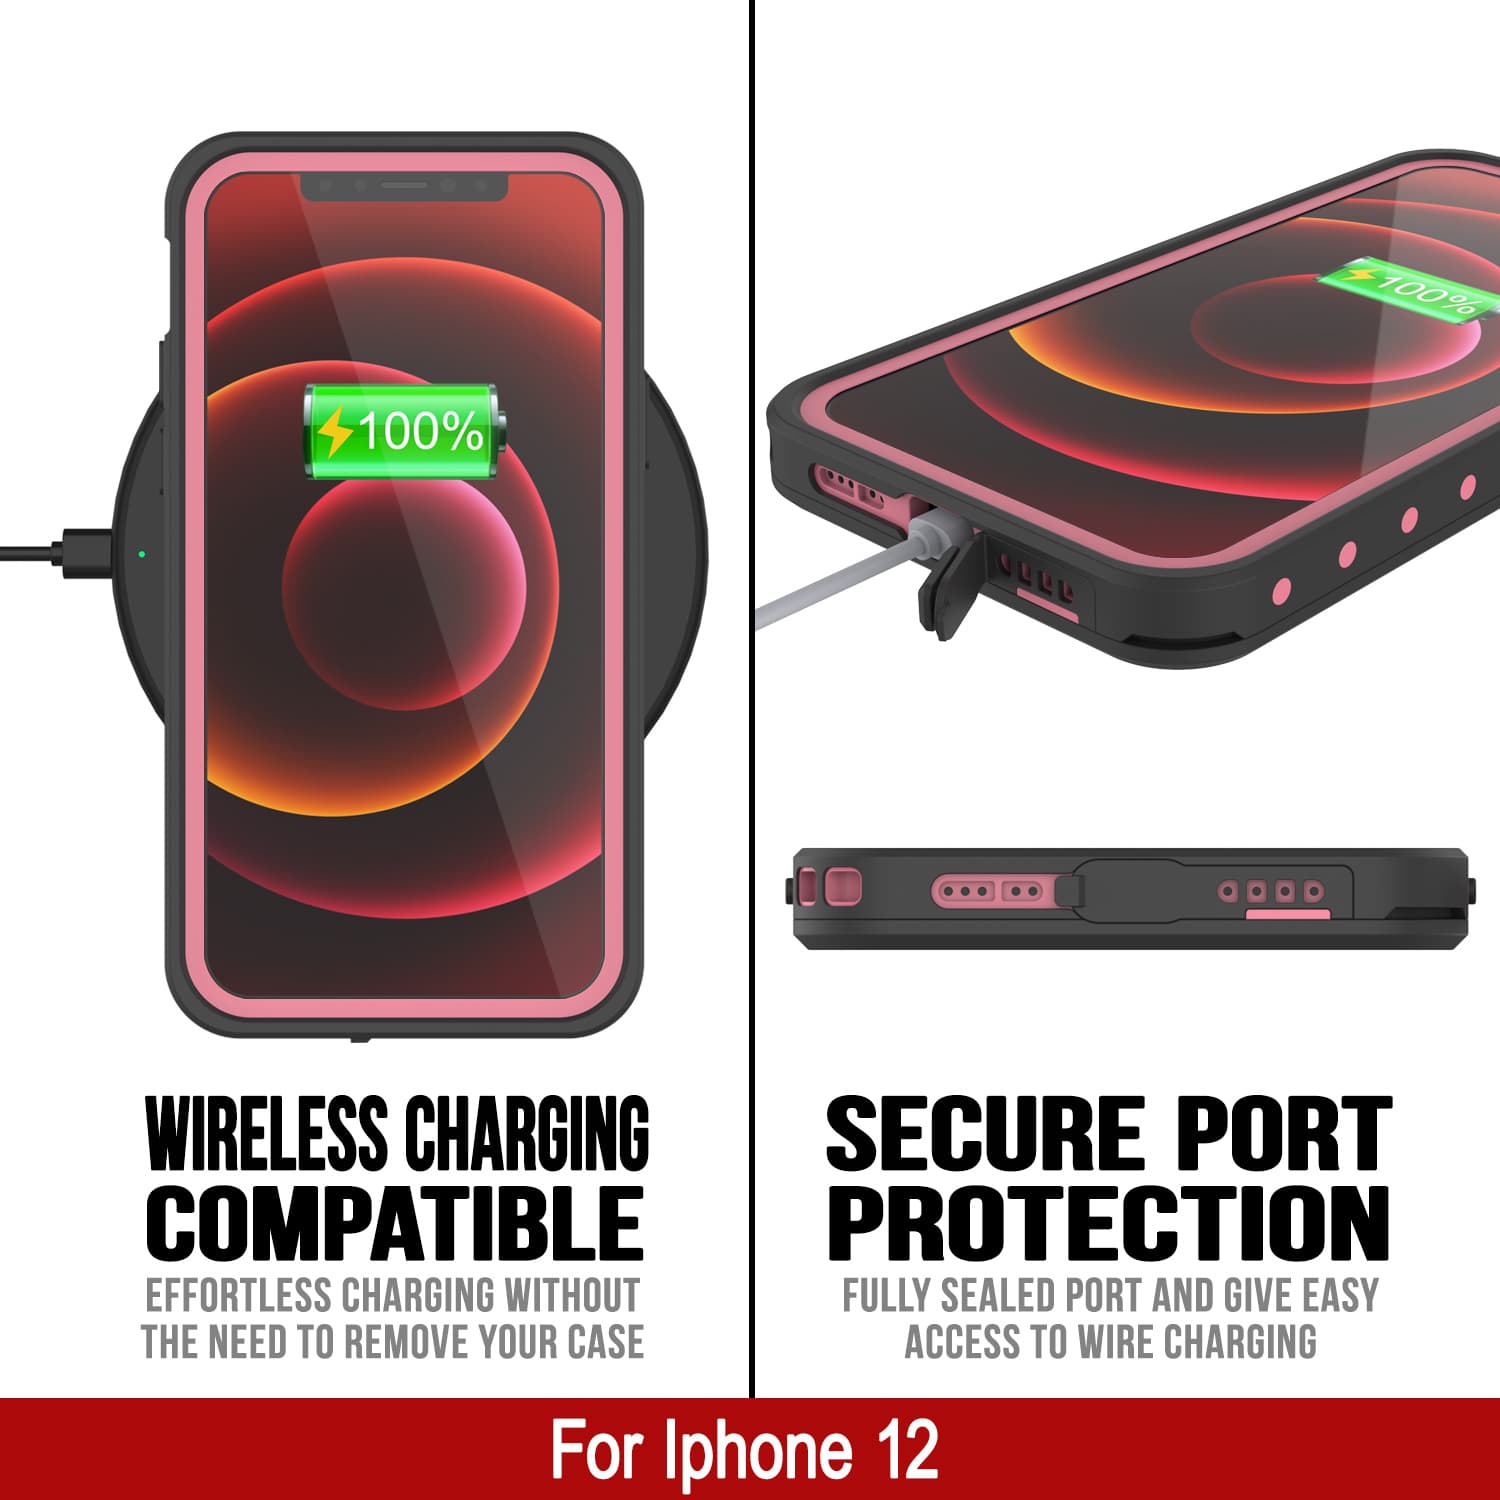 iPhone 12 Waterproof IP68 Case, Punkcase [Pink] [StudStar Series] [Slim Fit] [Dirtproof]